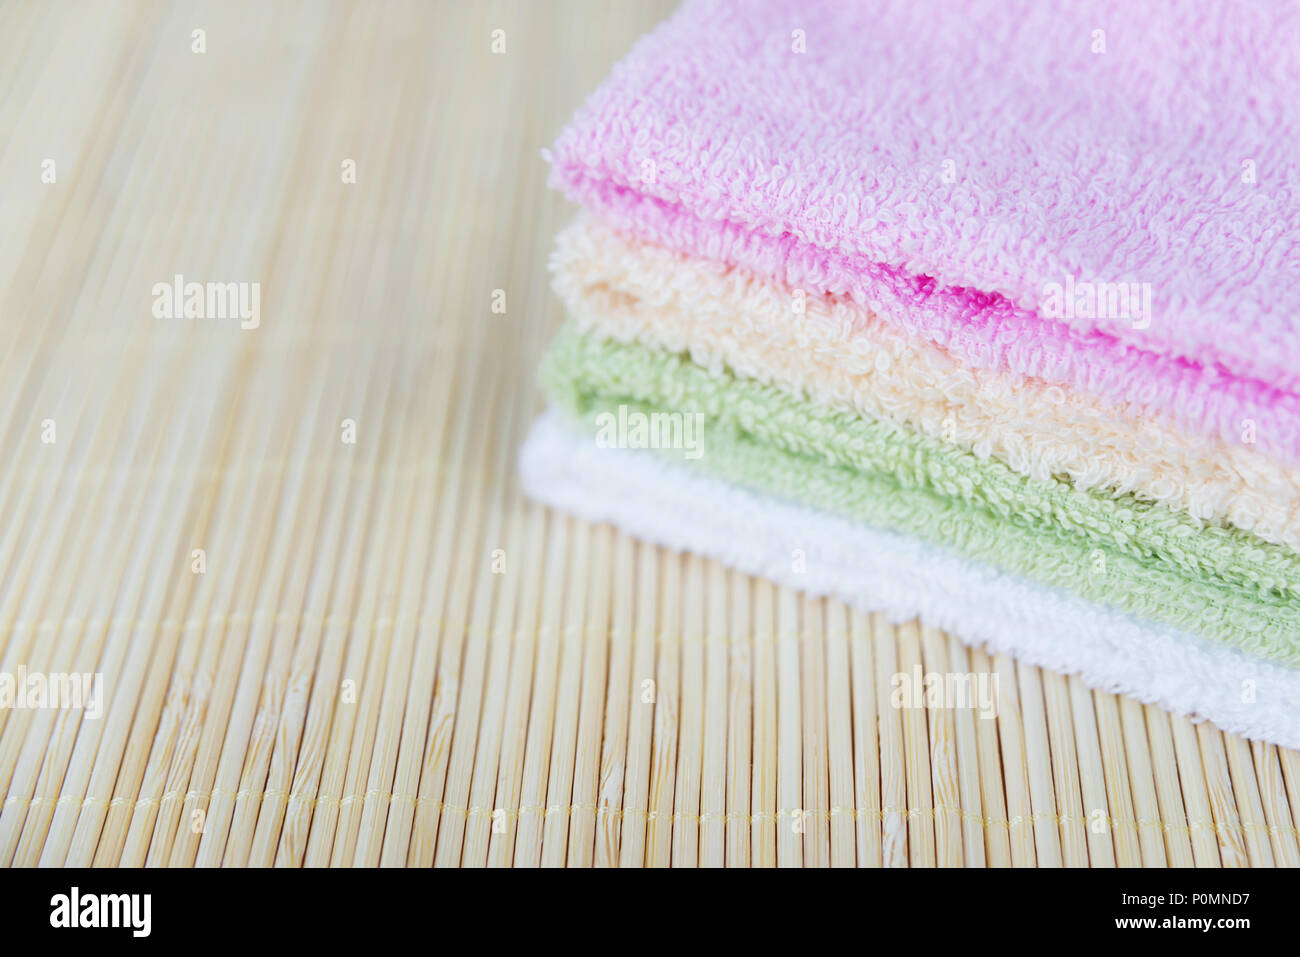 Pila de terry toallas limpias multicolor sobre una estera de bambú, con espacio para texto Foto de stock